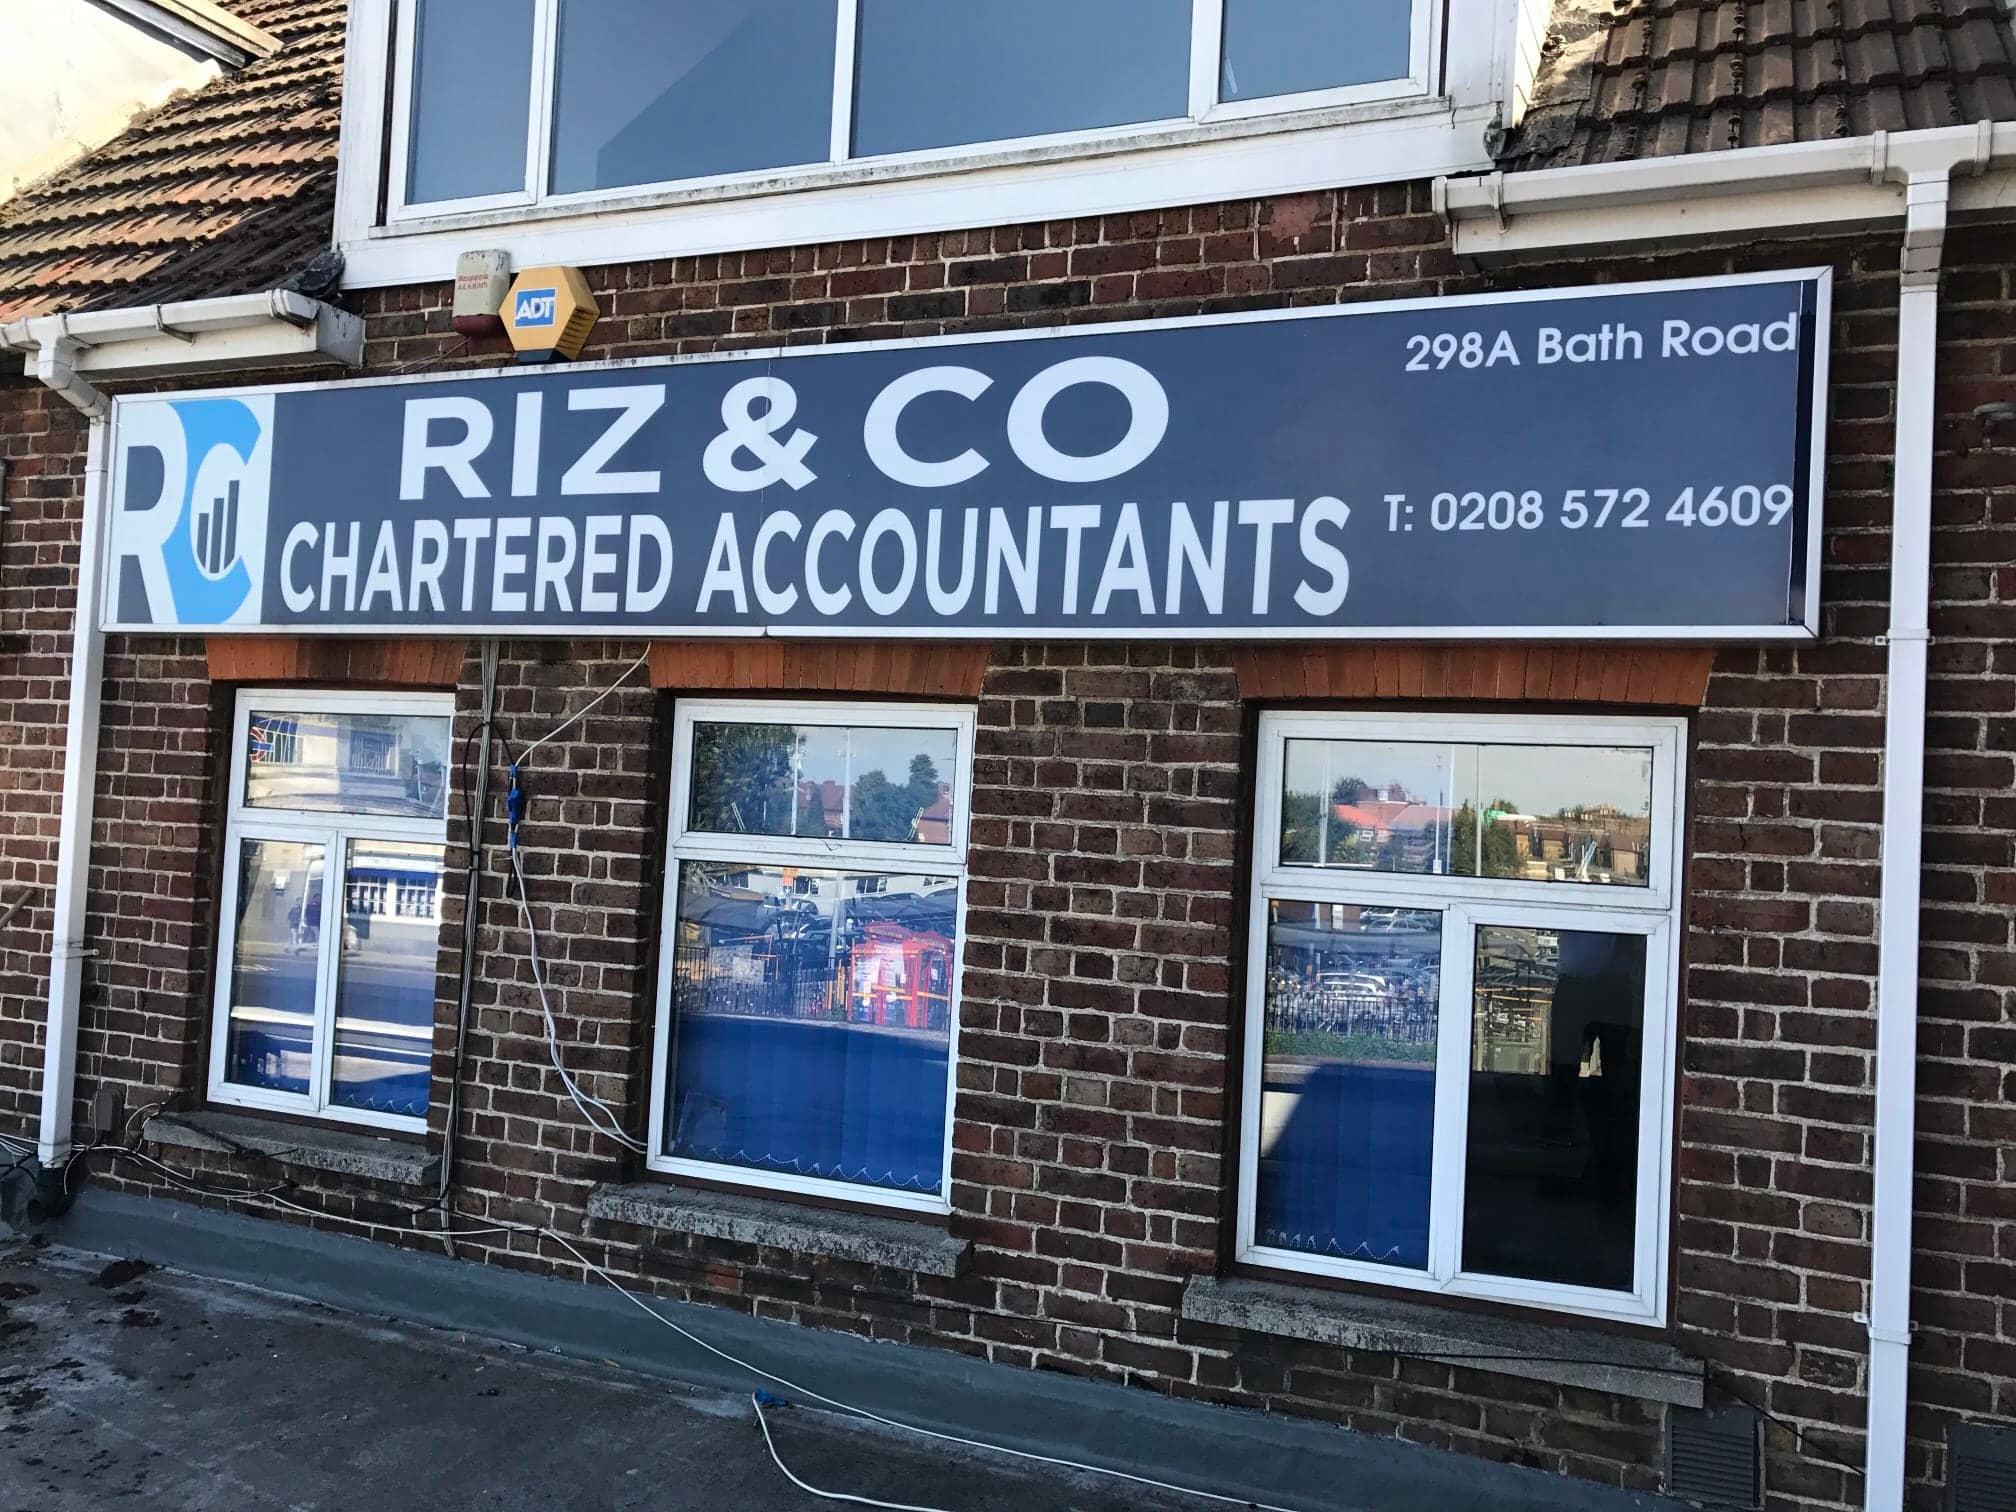 Riz & Co Chartered Accountants Hounslow 020 8572 4609